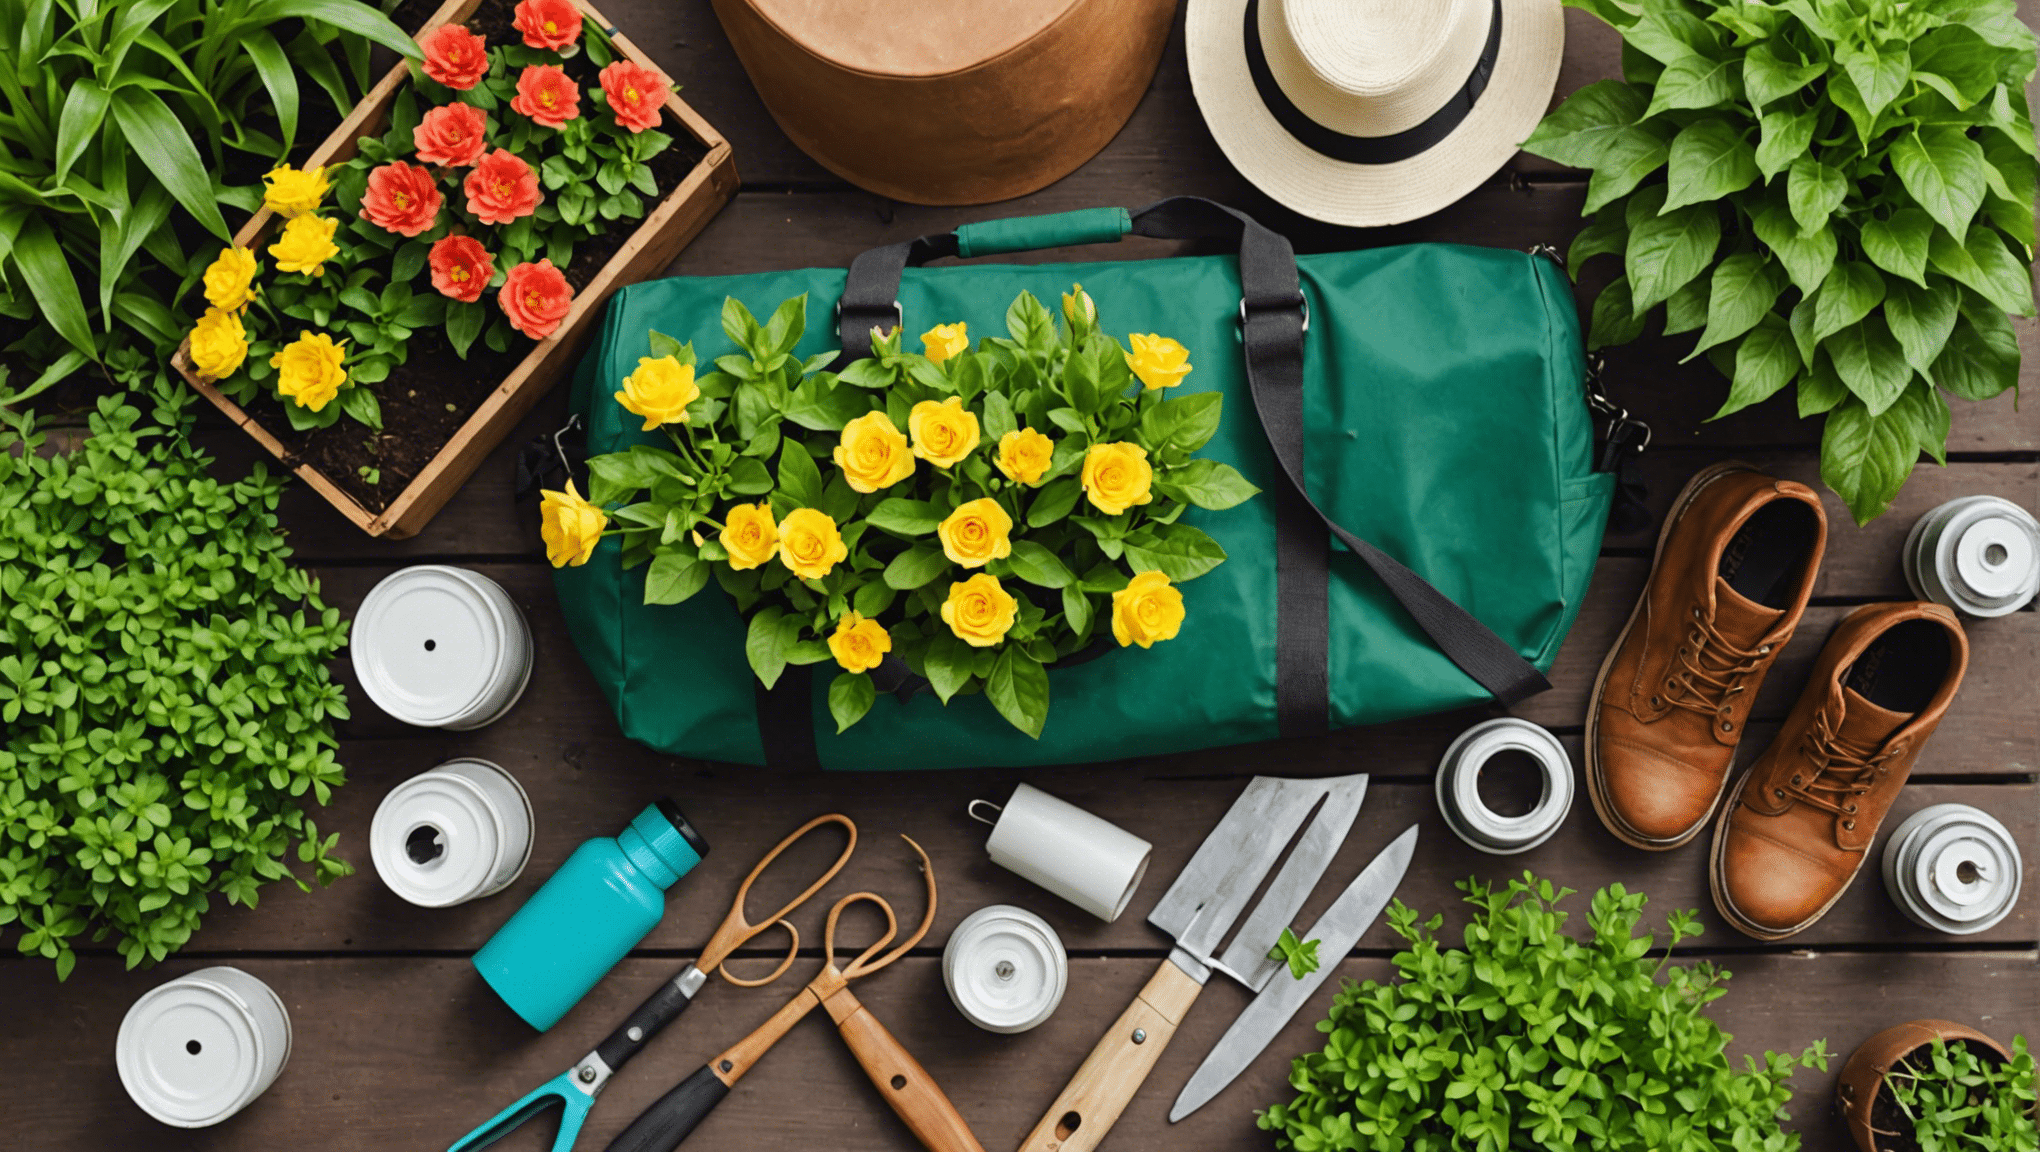 scopri gli articoli indispensabili da includere nella tua borsa da giardinaggio per un'esperienza di giardinaggio senza problemi.